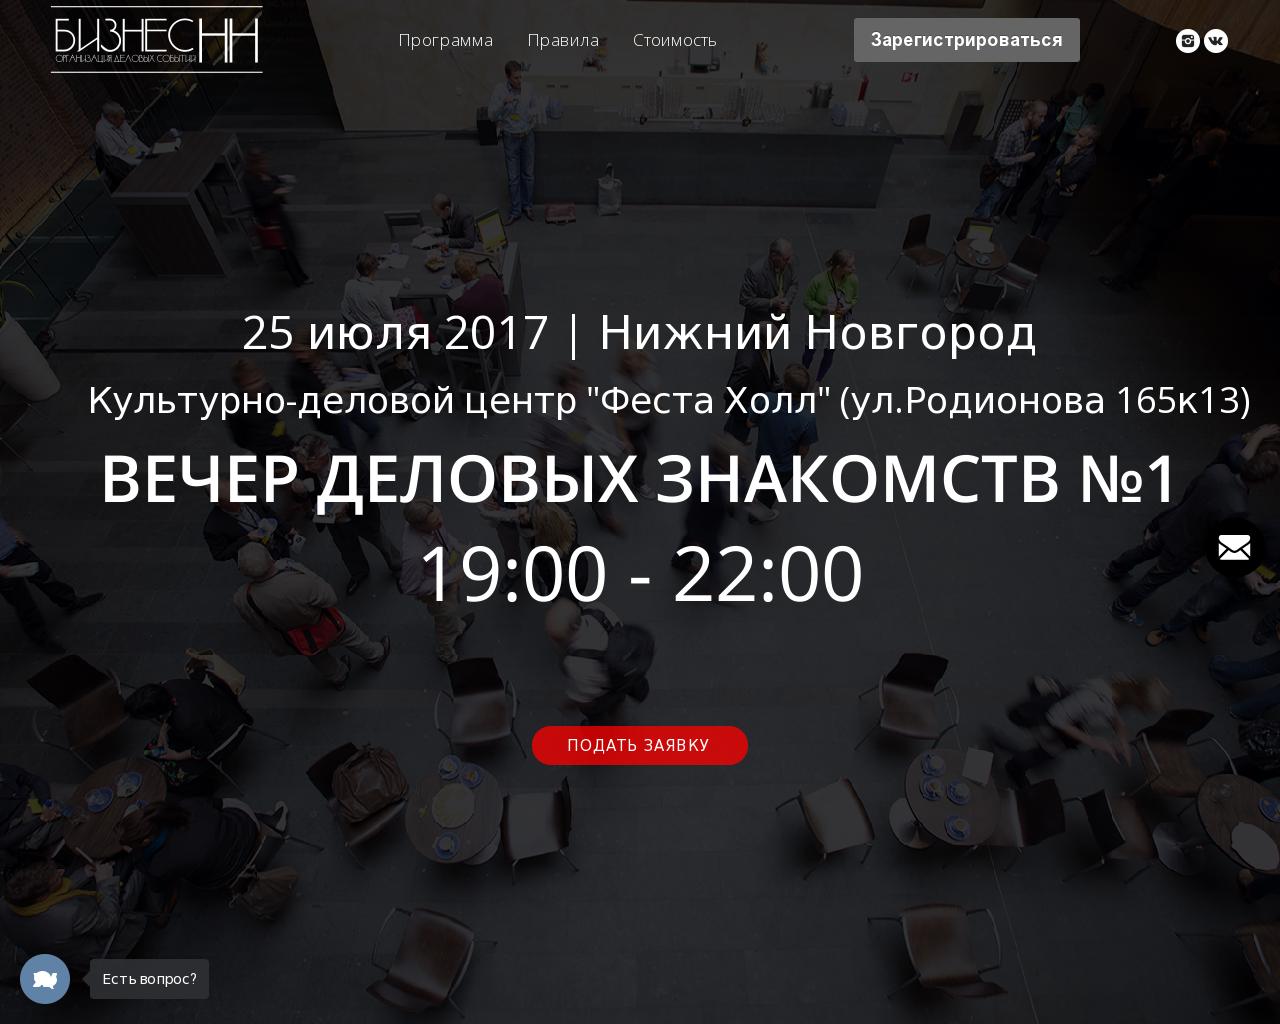 Изображение сайта networking-nn.ru в разрешении 1280x1024